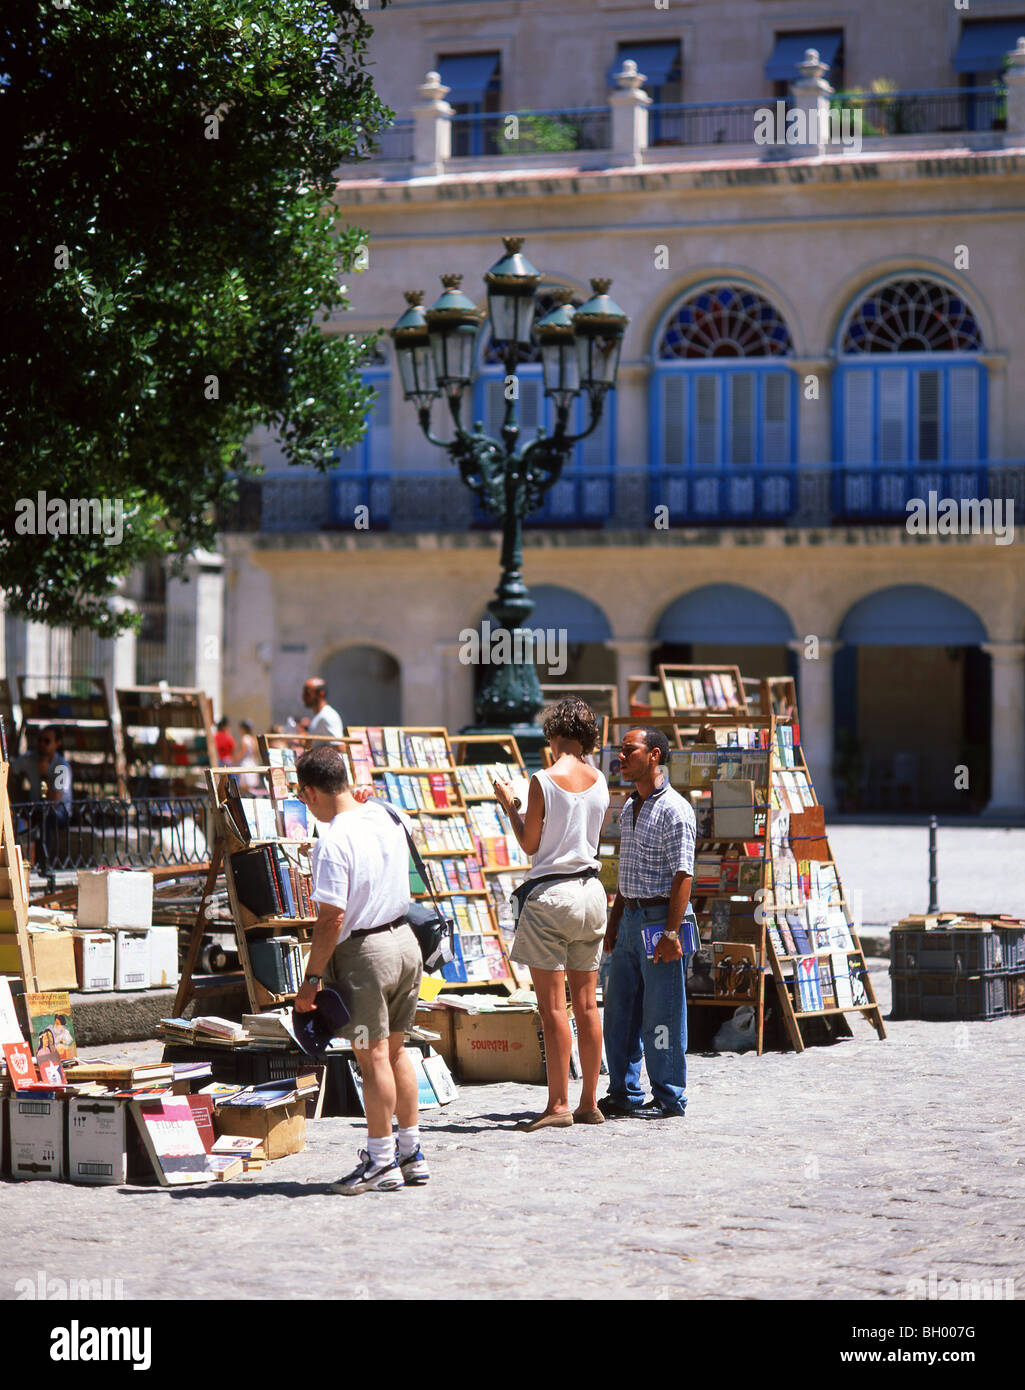 Book stalls, Plaza de Armas, Havana, La Habana, Republic of Cuba Stock Photo